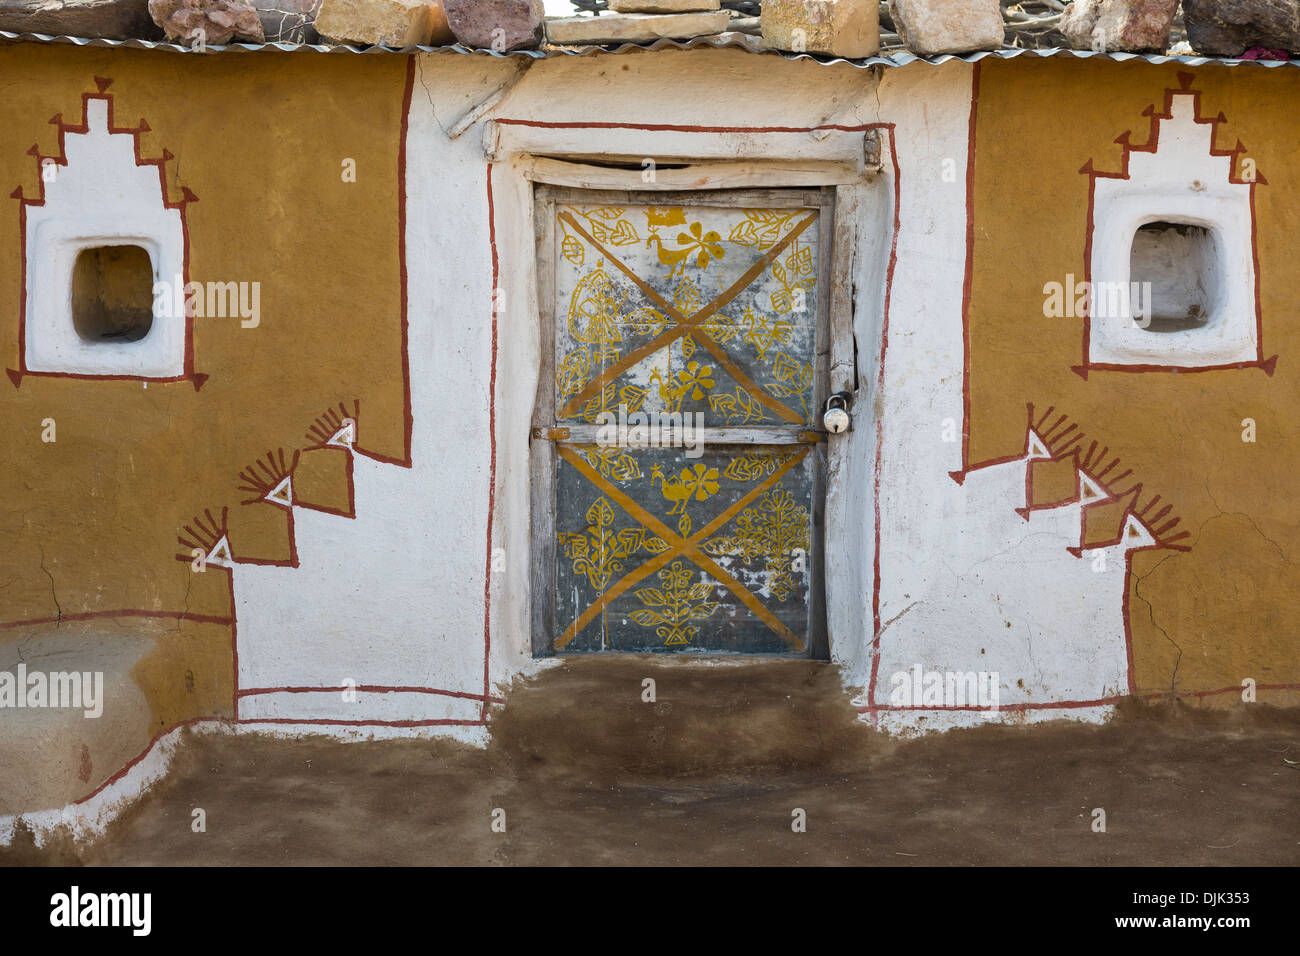 Fassade eines Hauses dekoriert mit Zeichnungen, Farben und Stil dieser nördlichen Region von Rajasthan. Stockfoto